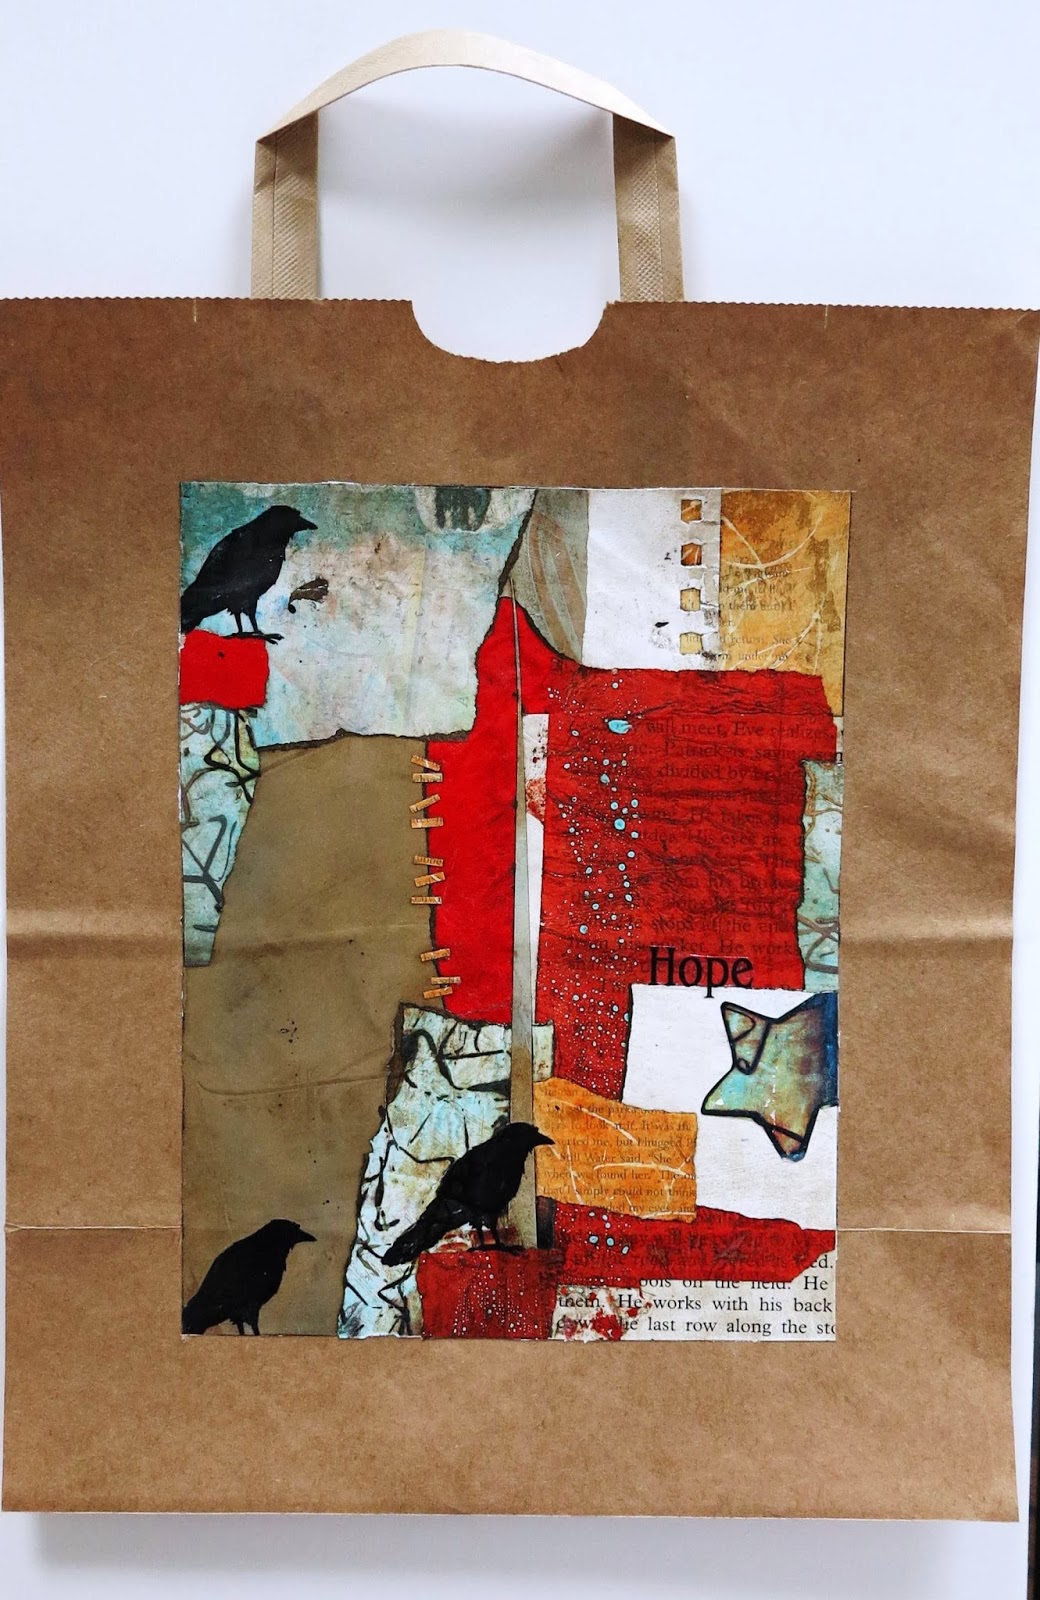 Brown Paper Bag - Design & Paper